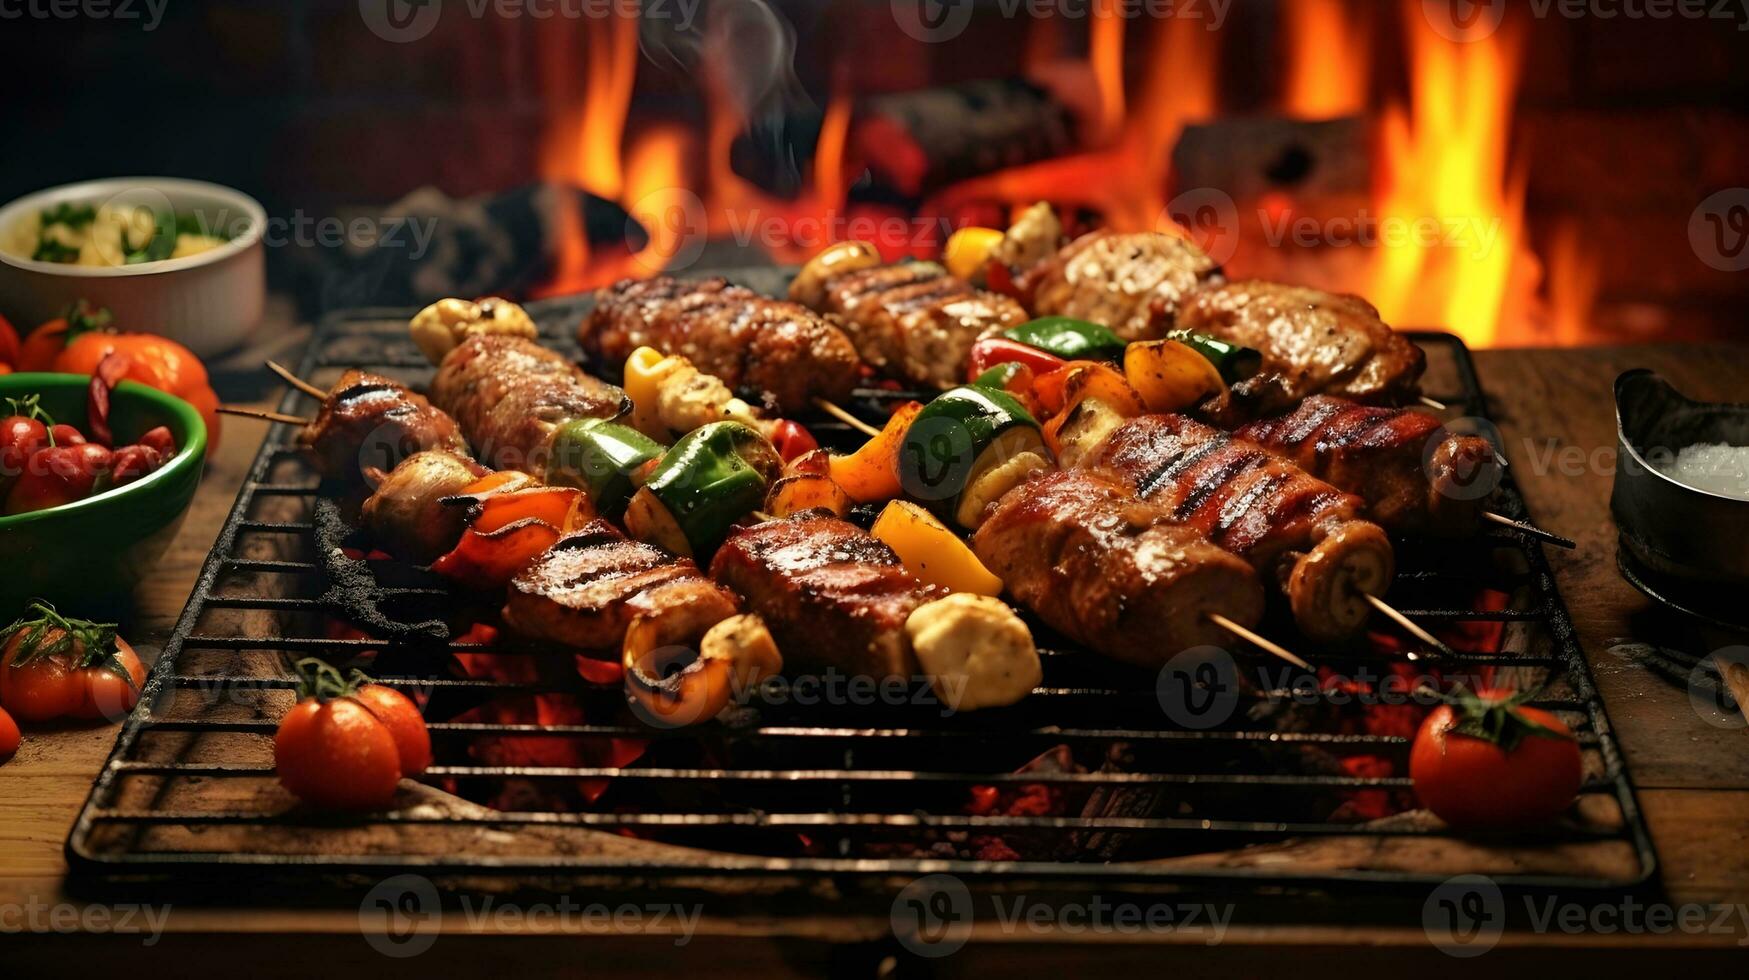 rundvlees steaks en groenten Aan de rooster met vlammen. barbecue. foto